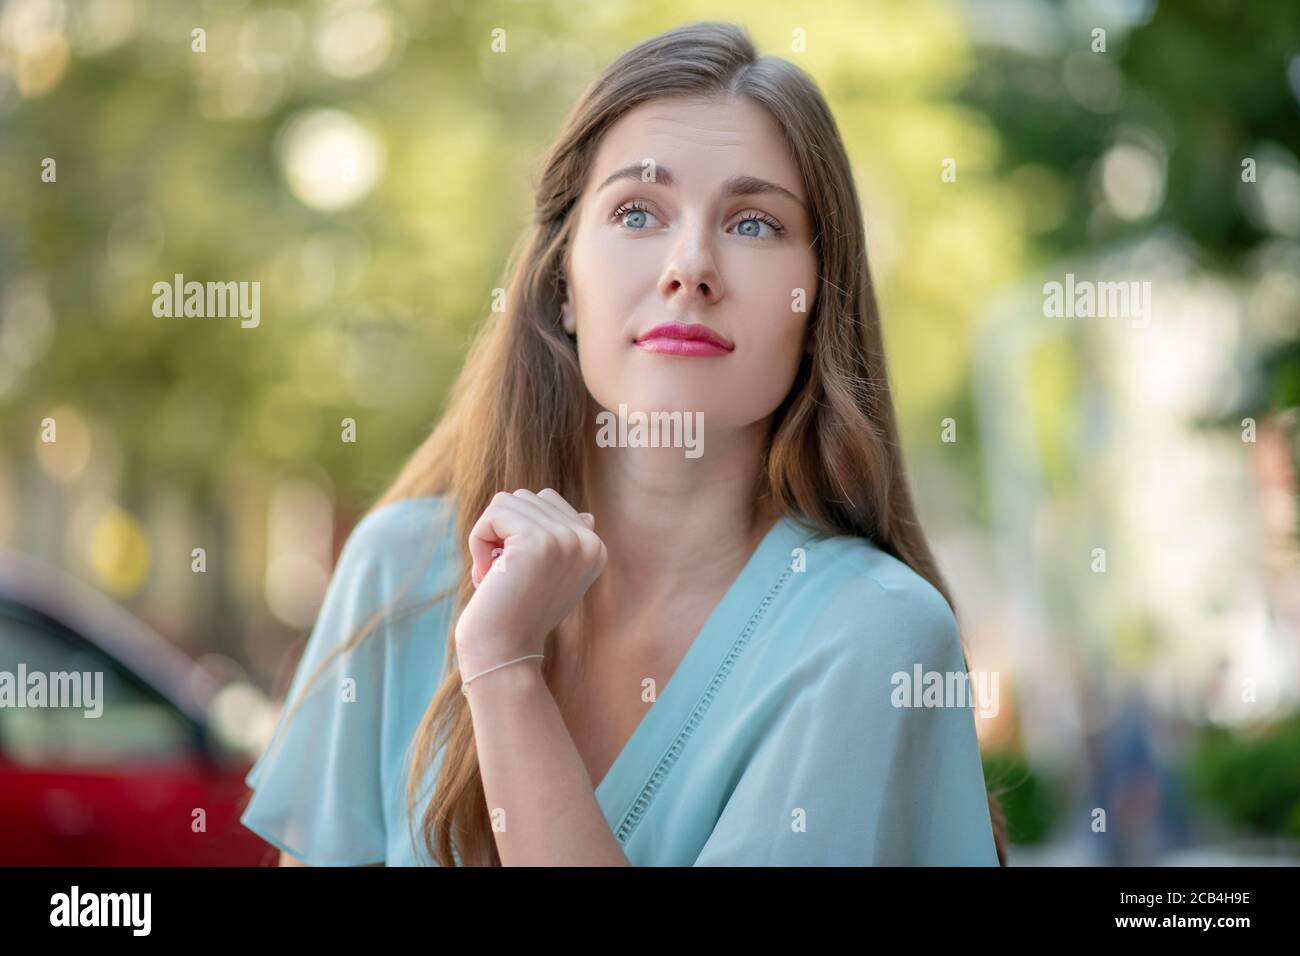 Femme romantique en robe bleue attendant quelqu'un Banque D'Images